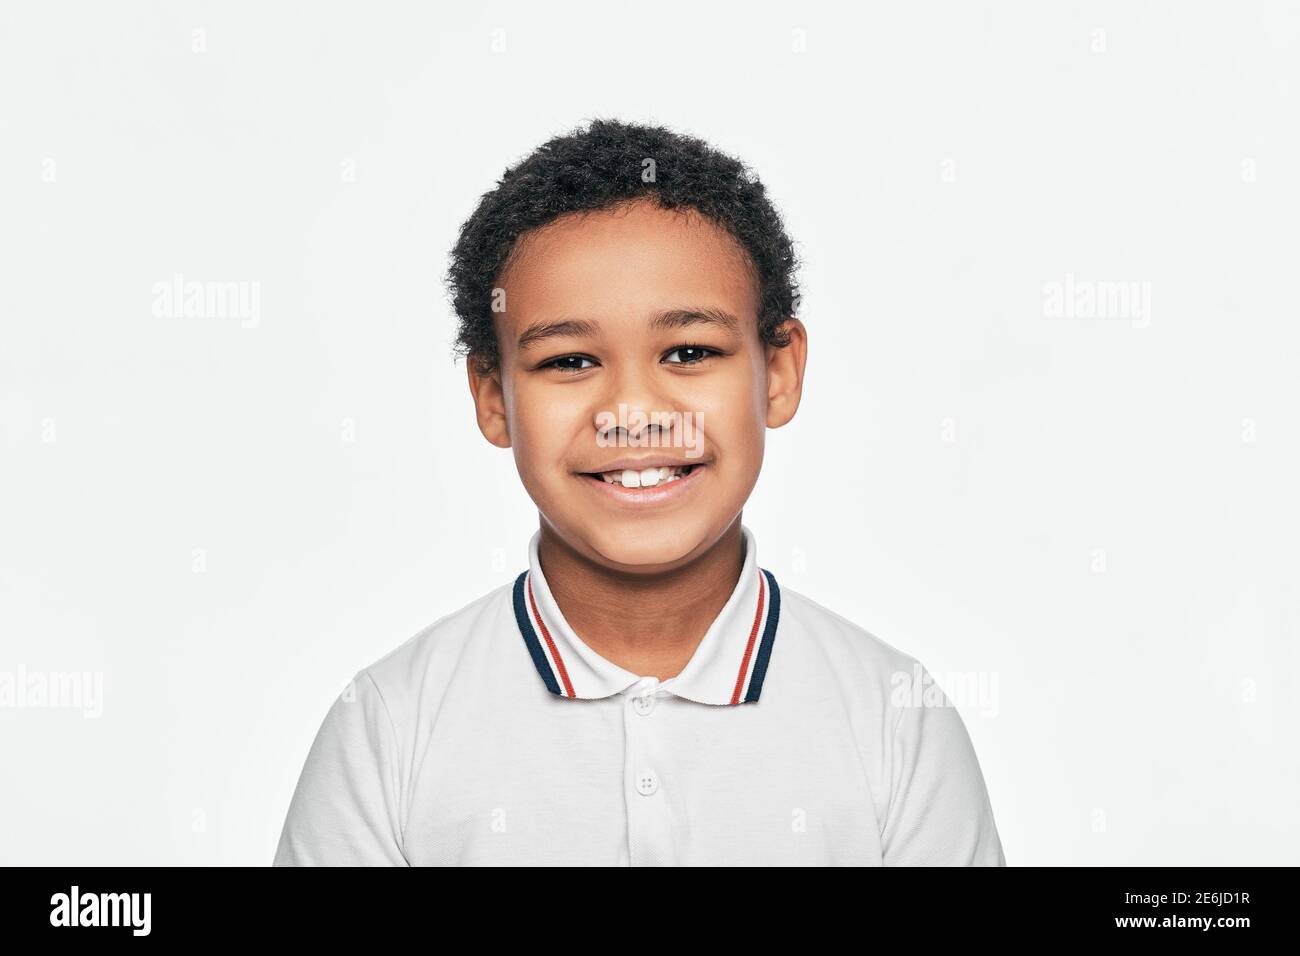 Portrait d'un beau garçon afro-américain avec un sourire crasseux. Isolé sur fond blanc Banque D'Images